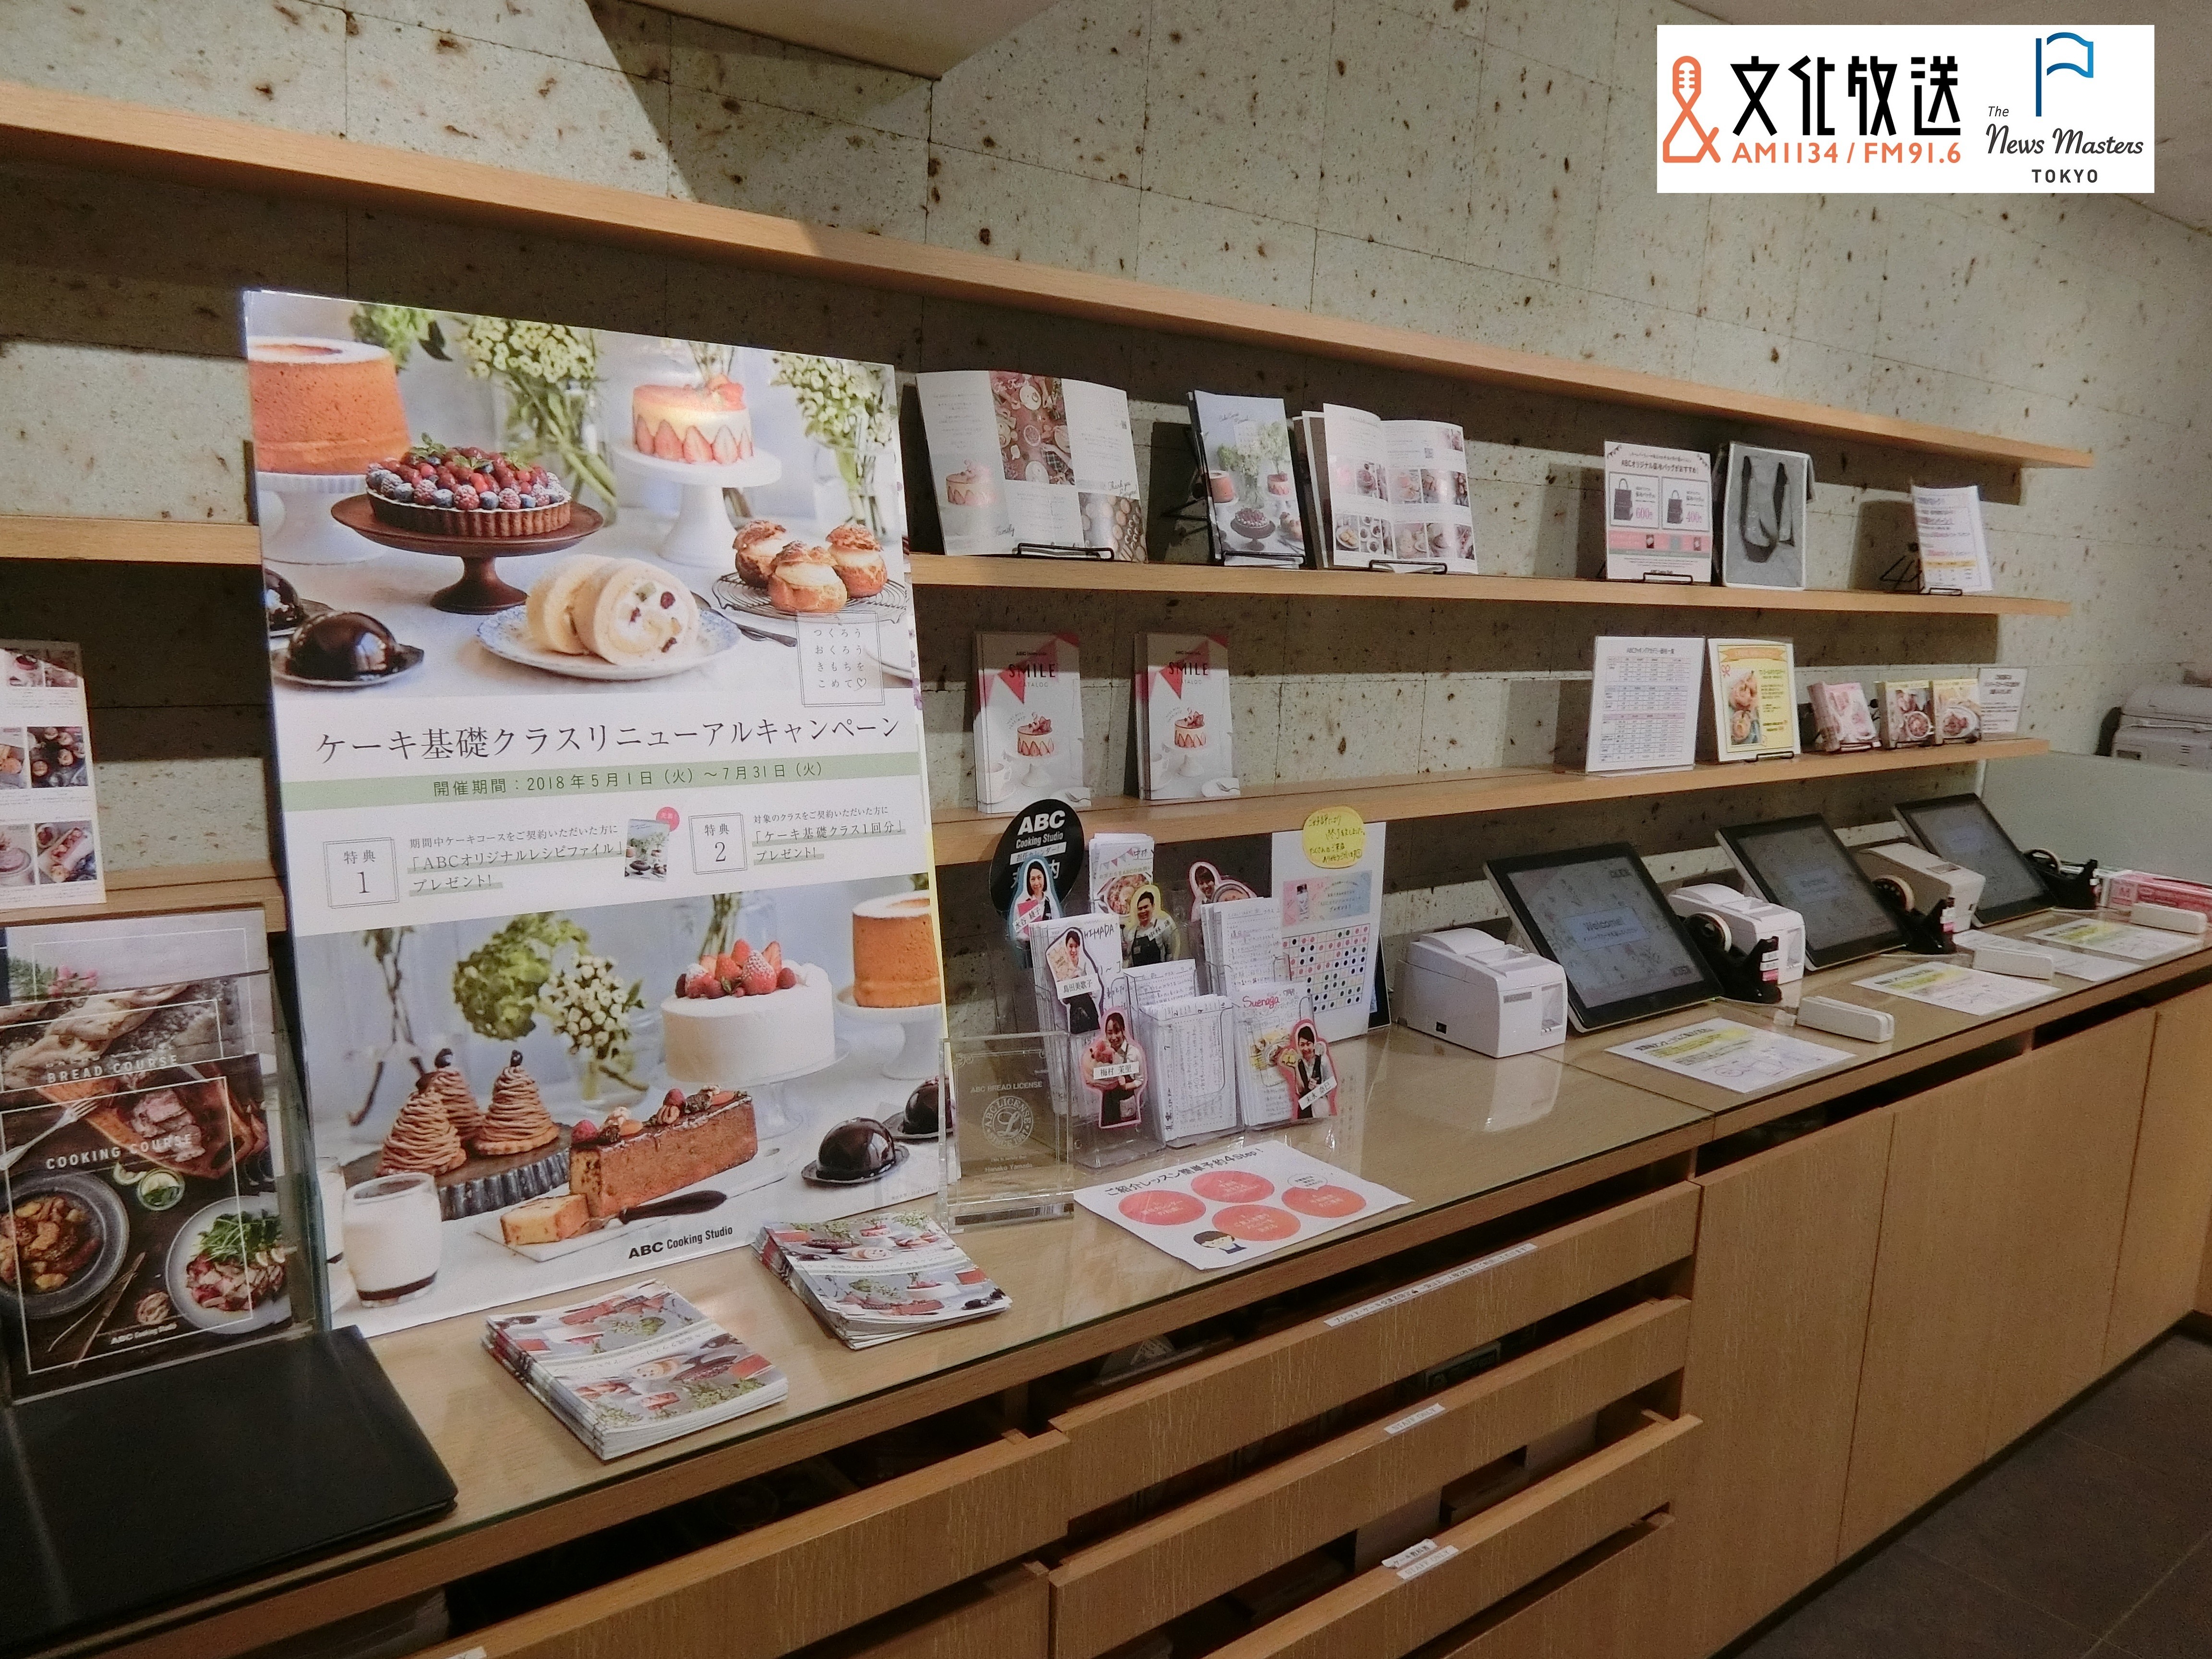 料理教室 ではない クッキングスタジオ 一筋の継続力 Abcクッキングスタジオ創立者 志村なるみさんの挑戦の軌跡 The News Masters Tokyo